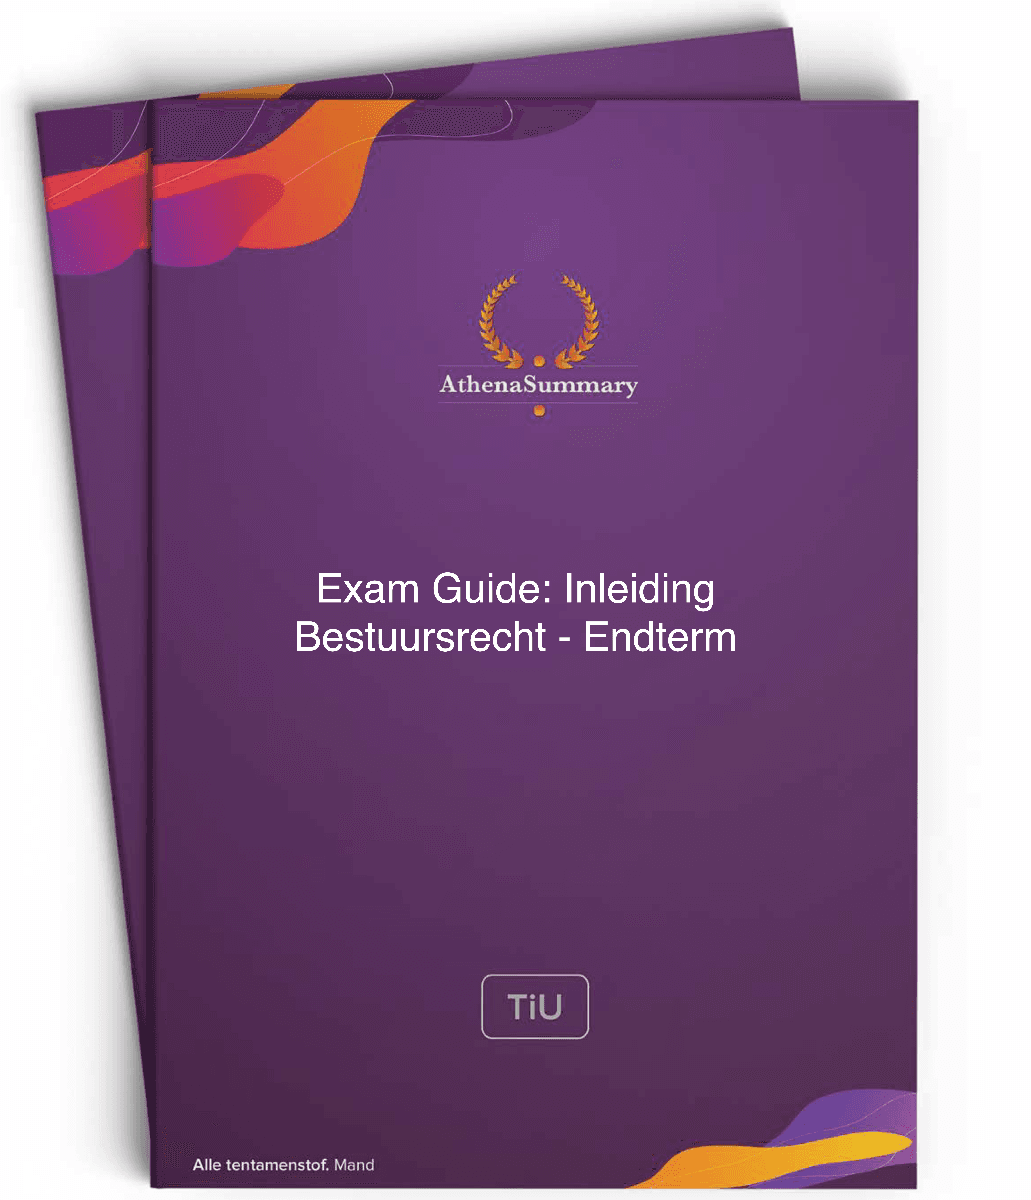 Exam Guide Inleiding Bestuursrecht - Endterm